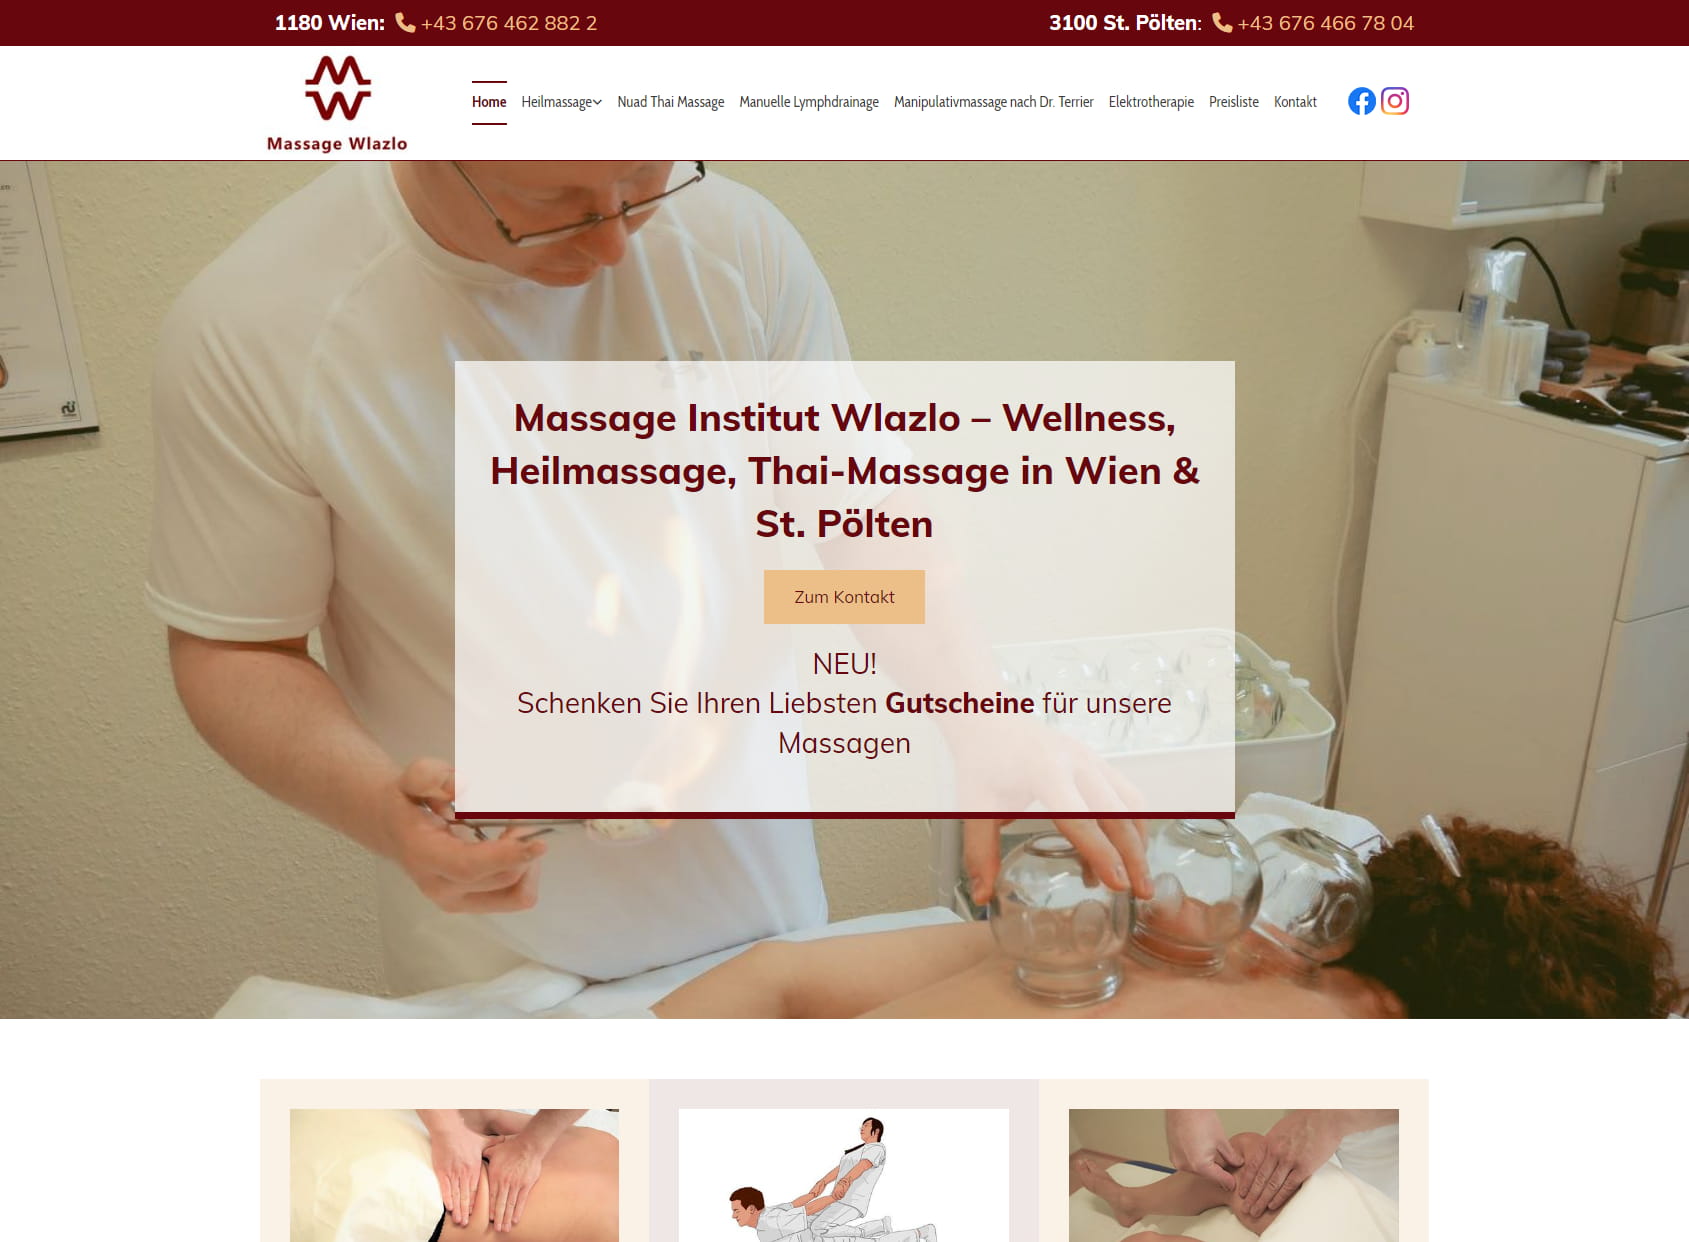 Massage Institut Wlazlo - Heilmassage, Thaimassage, Lymphdrainage